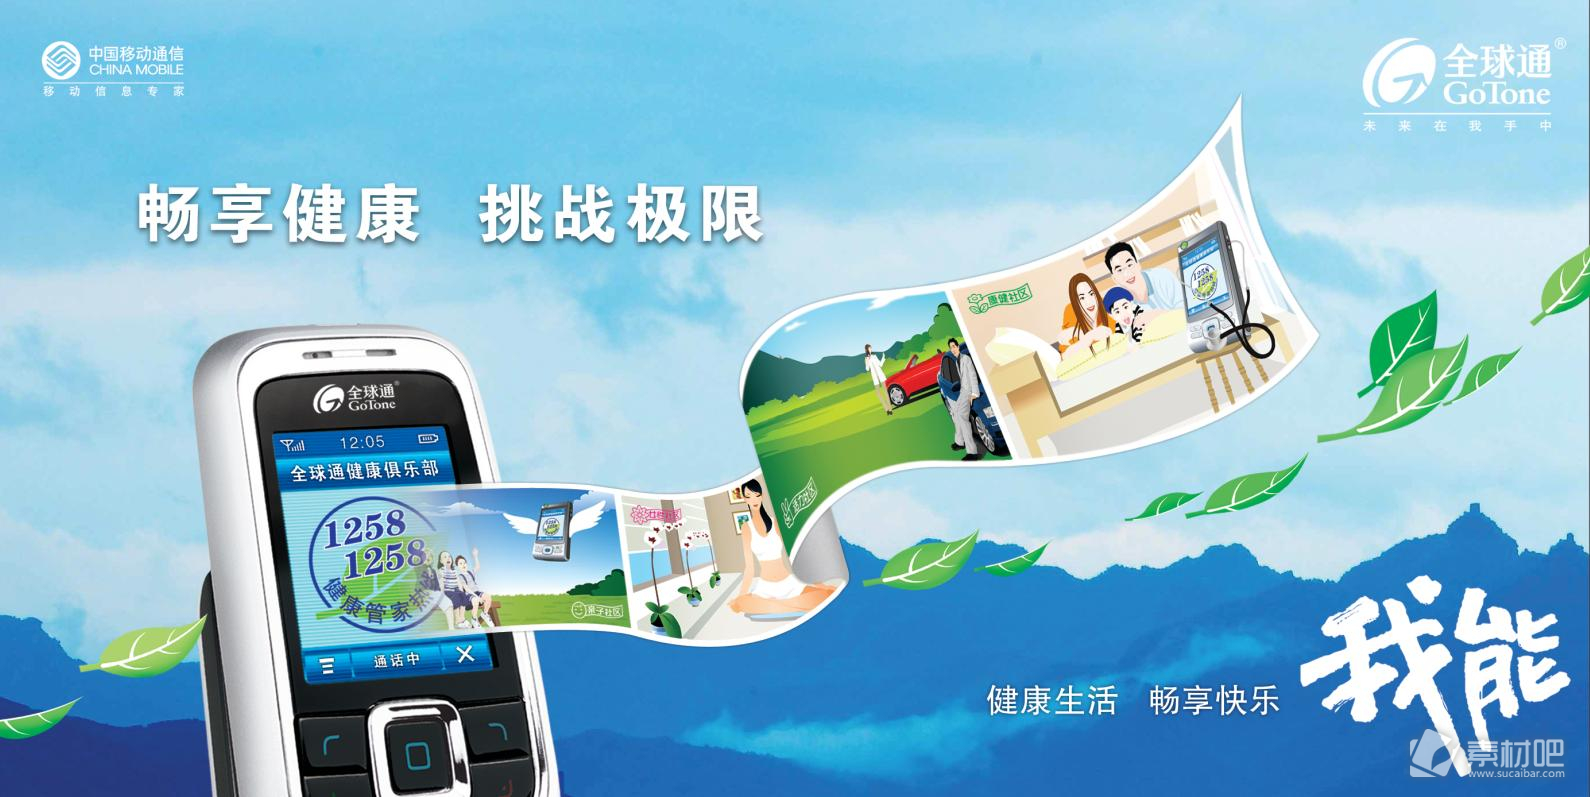 中国移动通信优惠介绍海报PSD素材